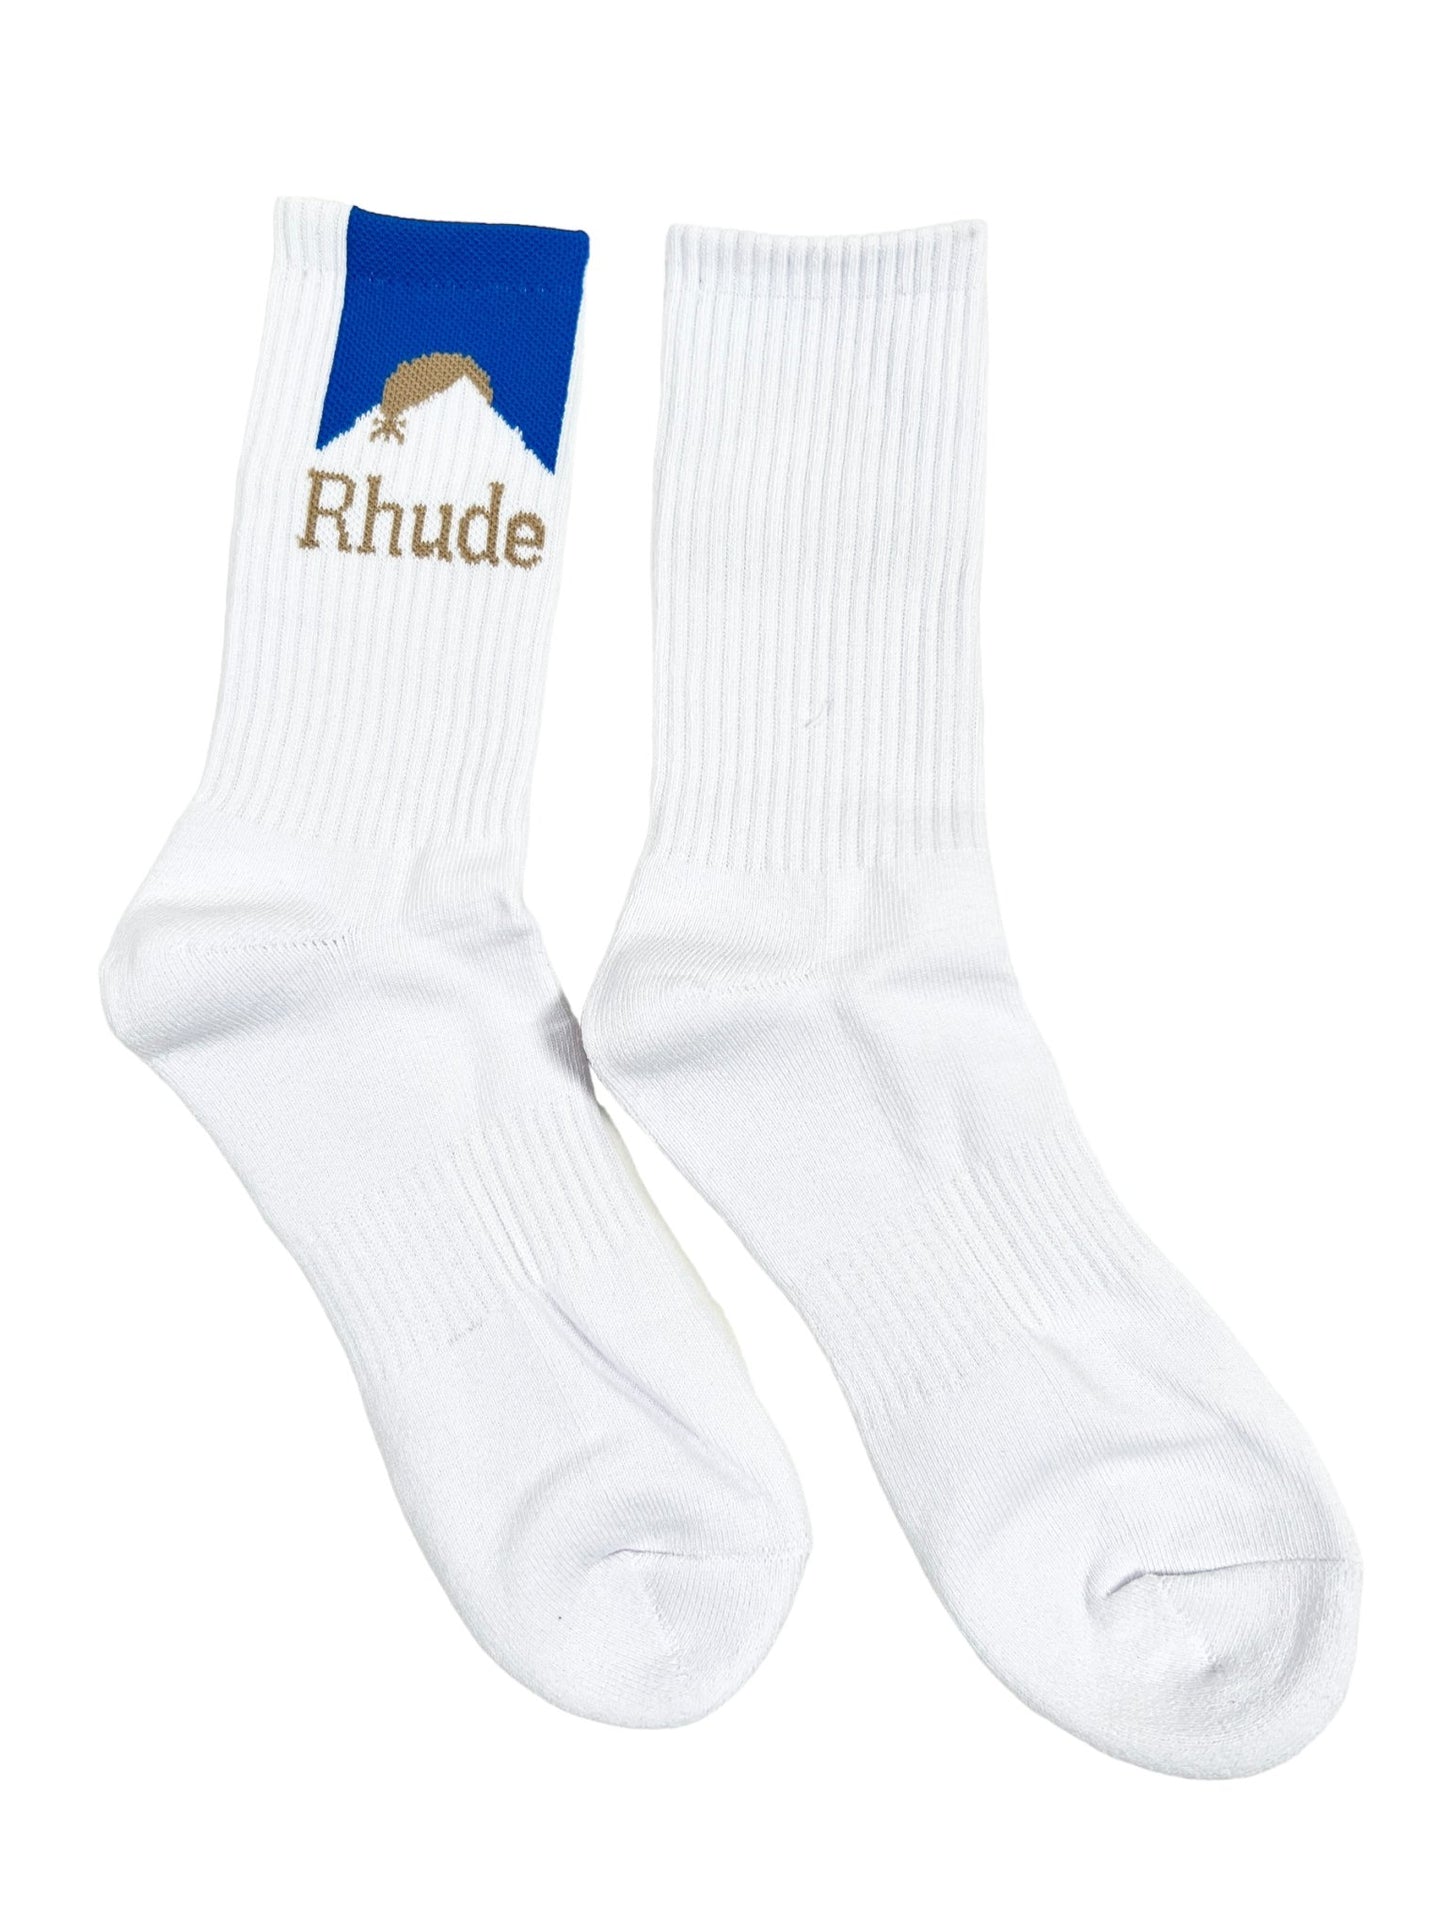 Probus RHUDE MOONLIGHT SOCK WHITE/BLUE RHUDE MOONLIGHT SOCK WHITE/BLUE YELLOW